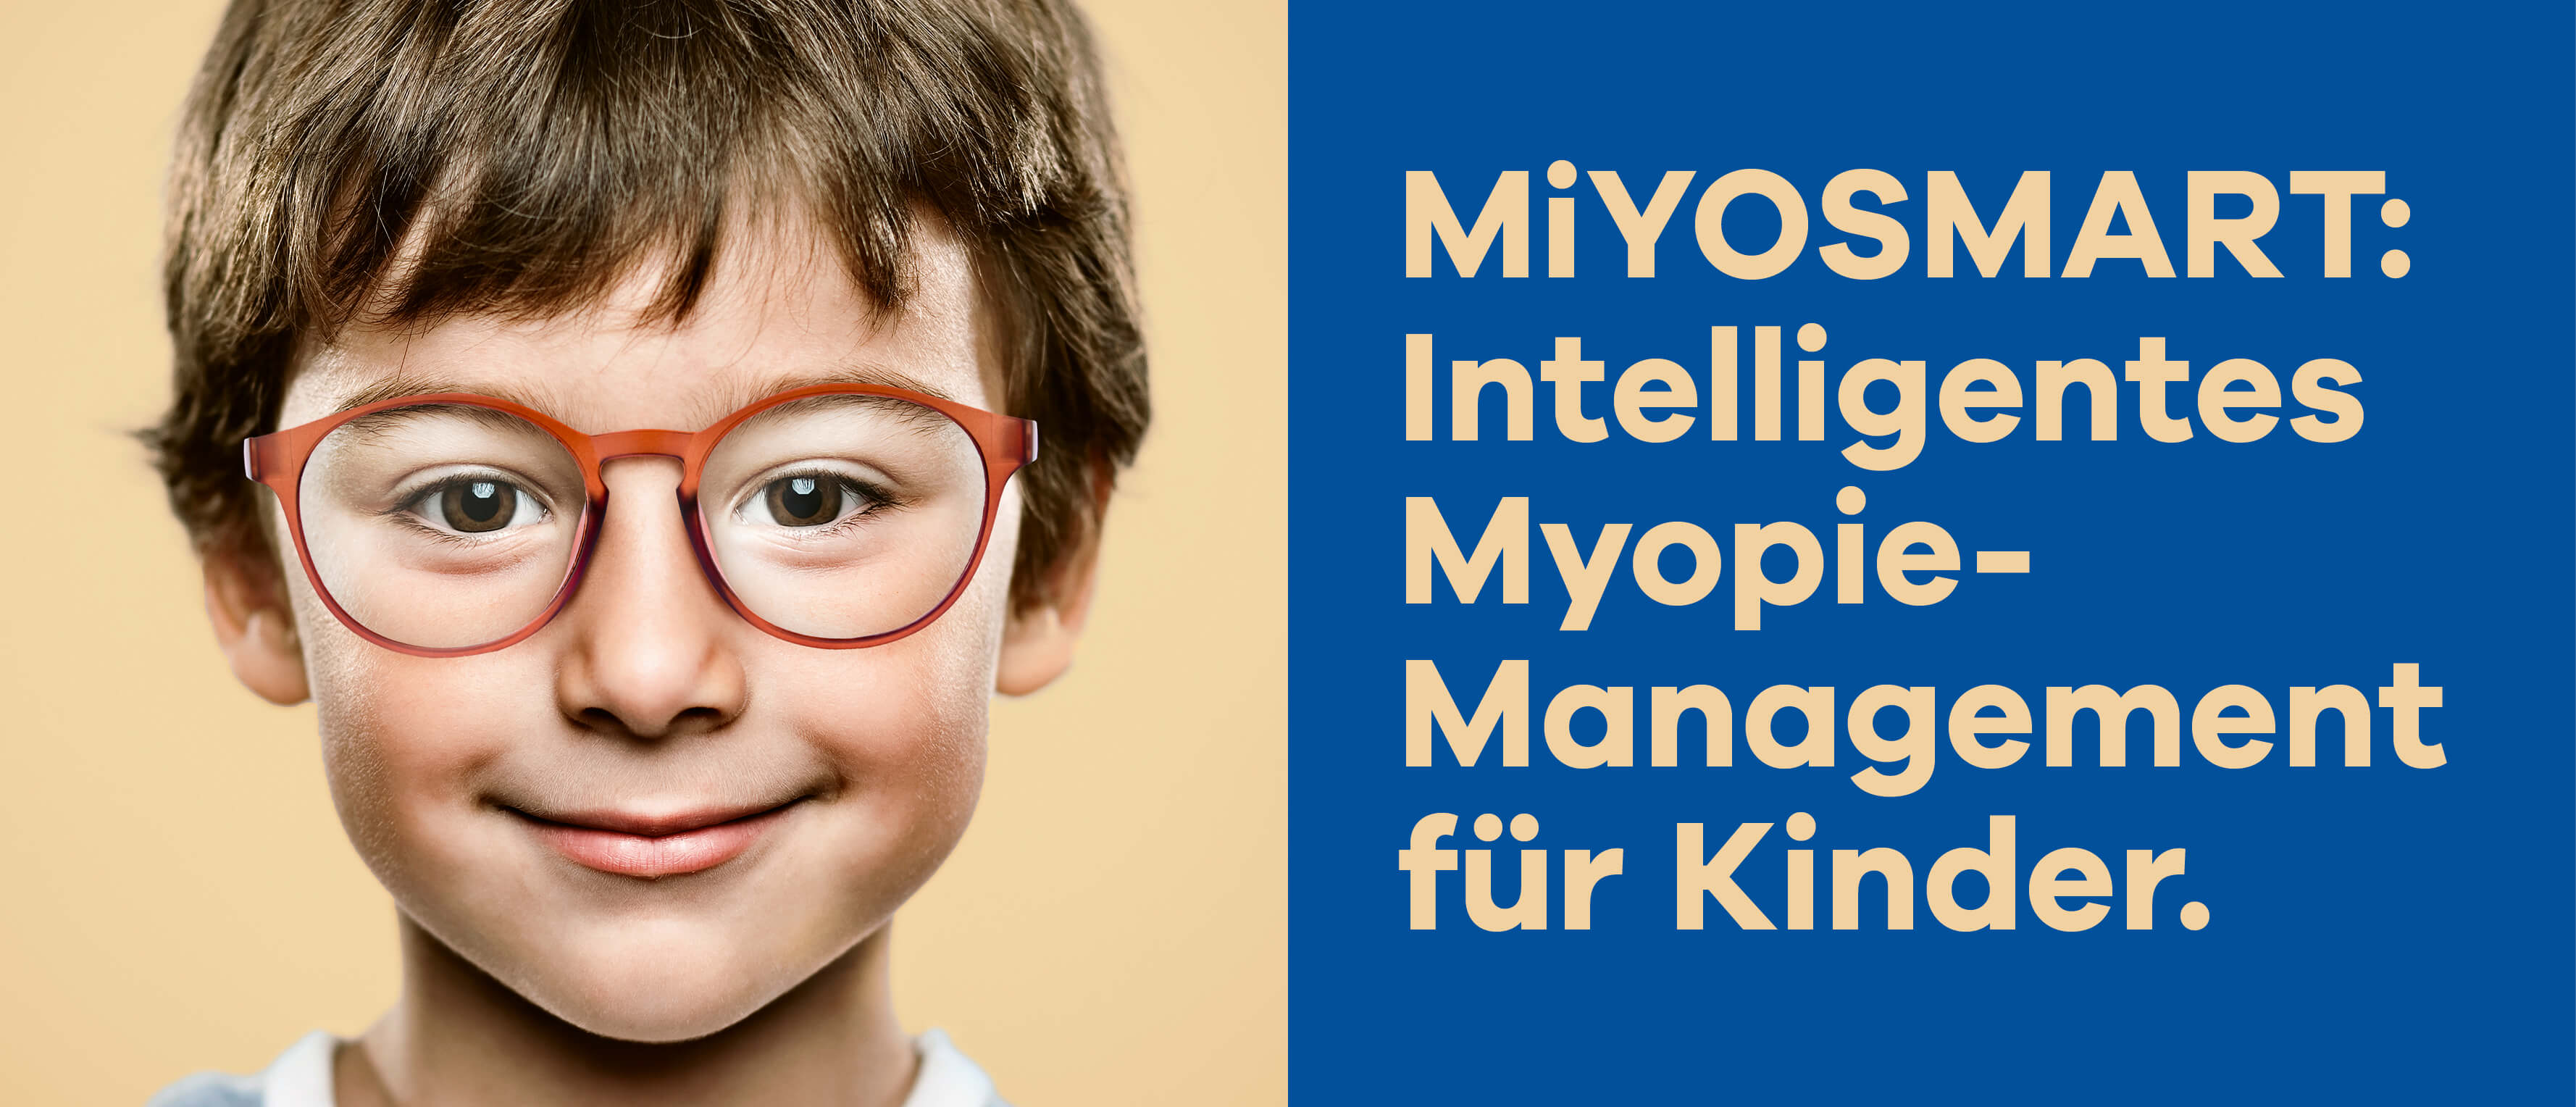 MiYOSMART: Intelligentes Myopie-Management für Kinder